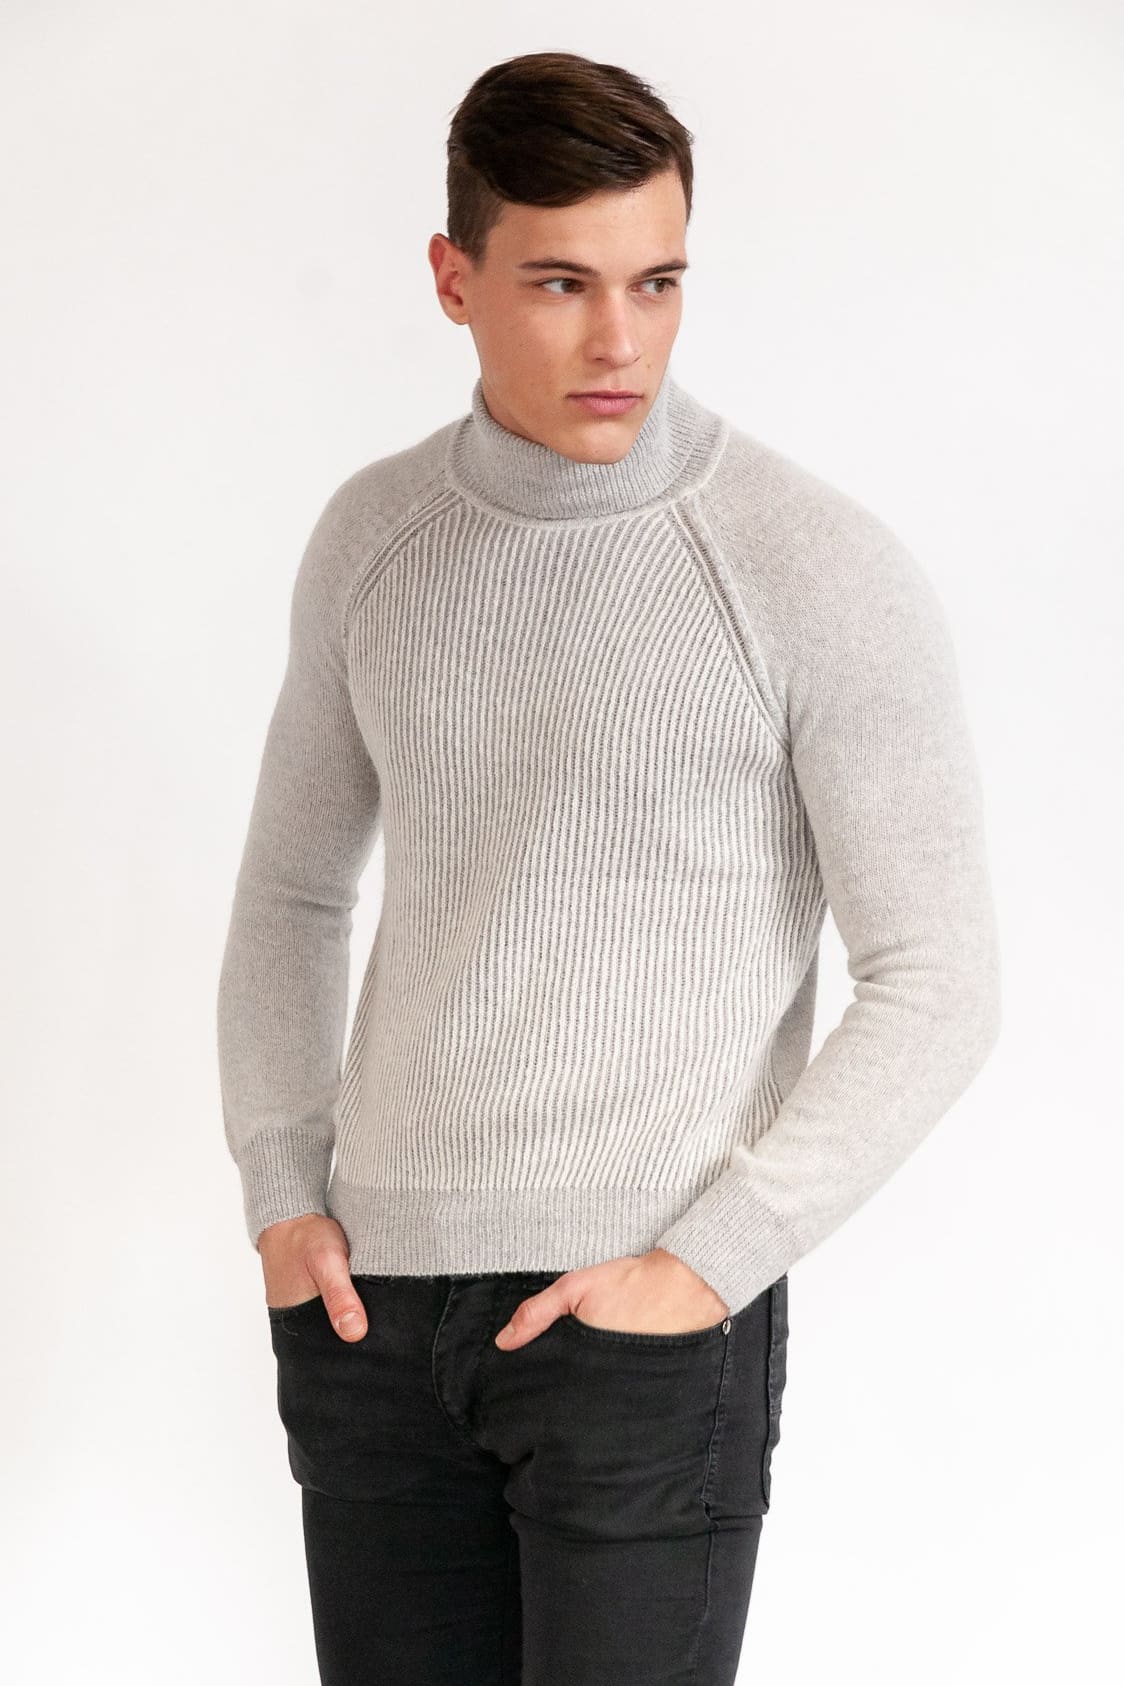 Crail - Foam - Sweaters